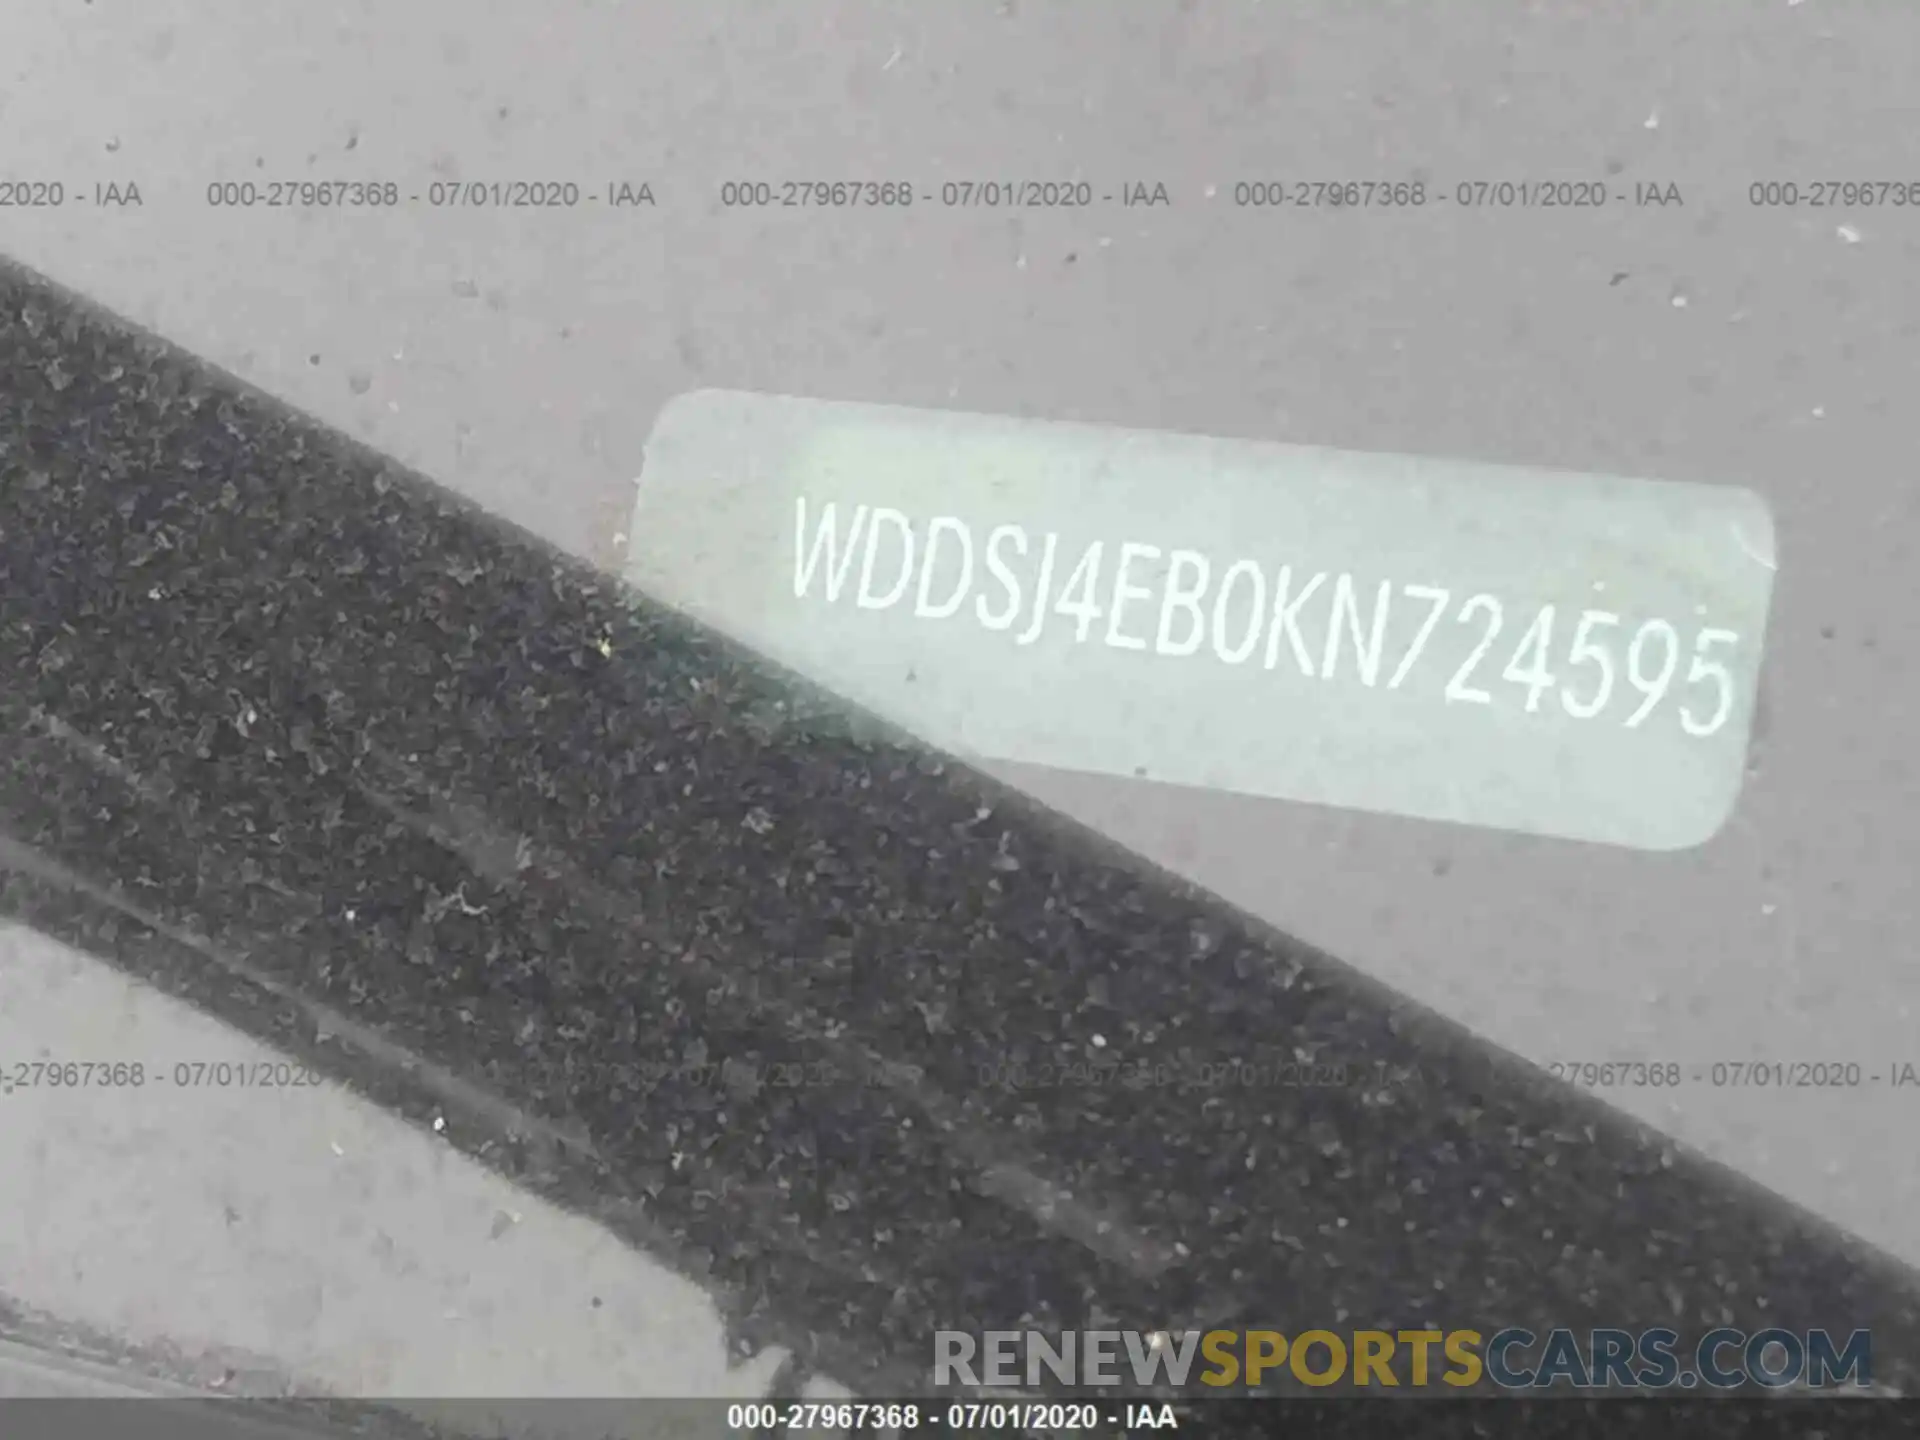 9 Фотография поврежденного автомобиля WDDSJ4EB0KN724595 MERCEDES-BENZ CLA 2019